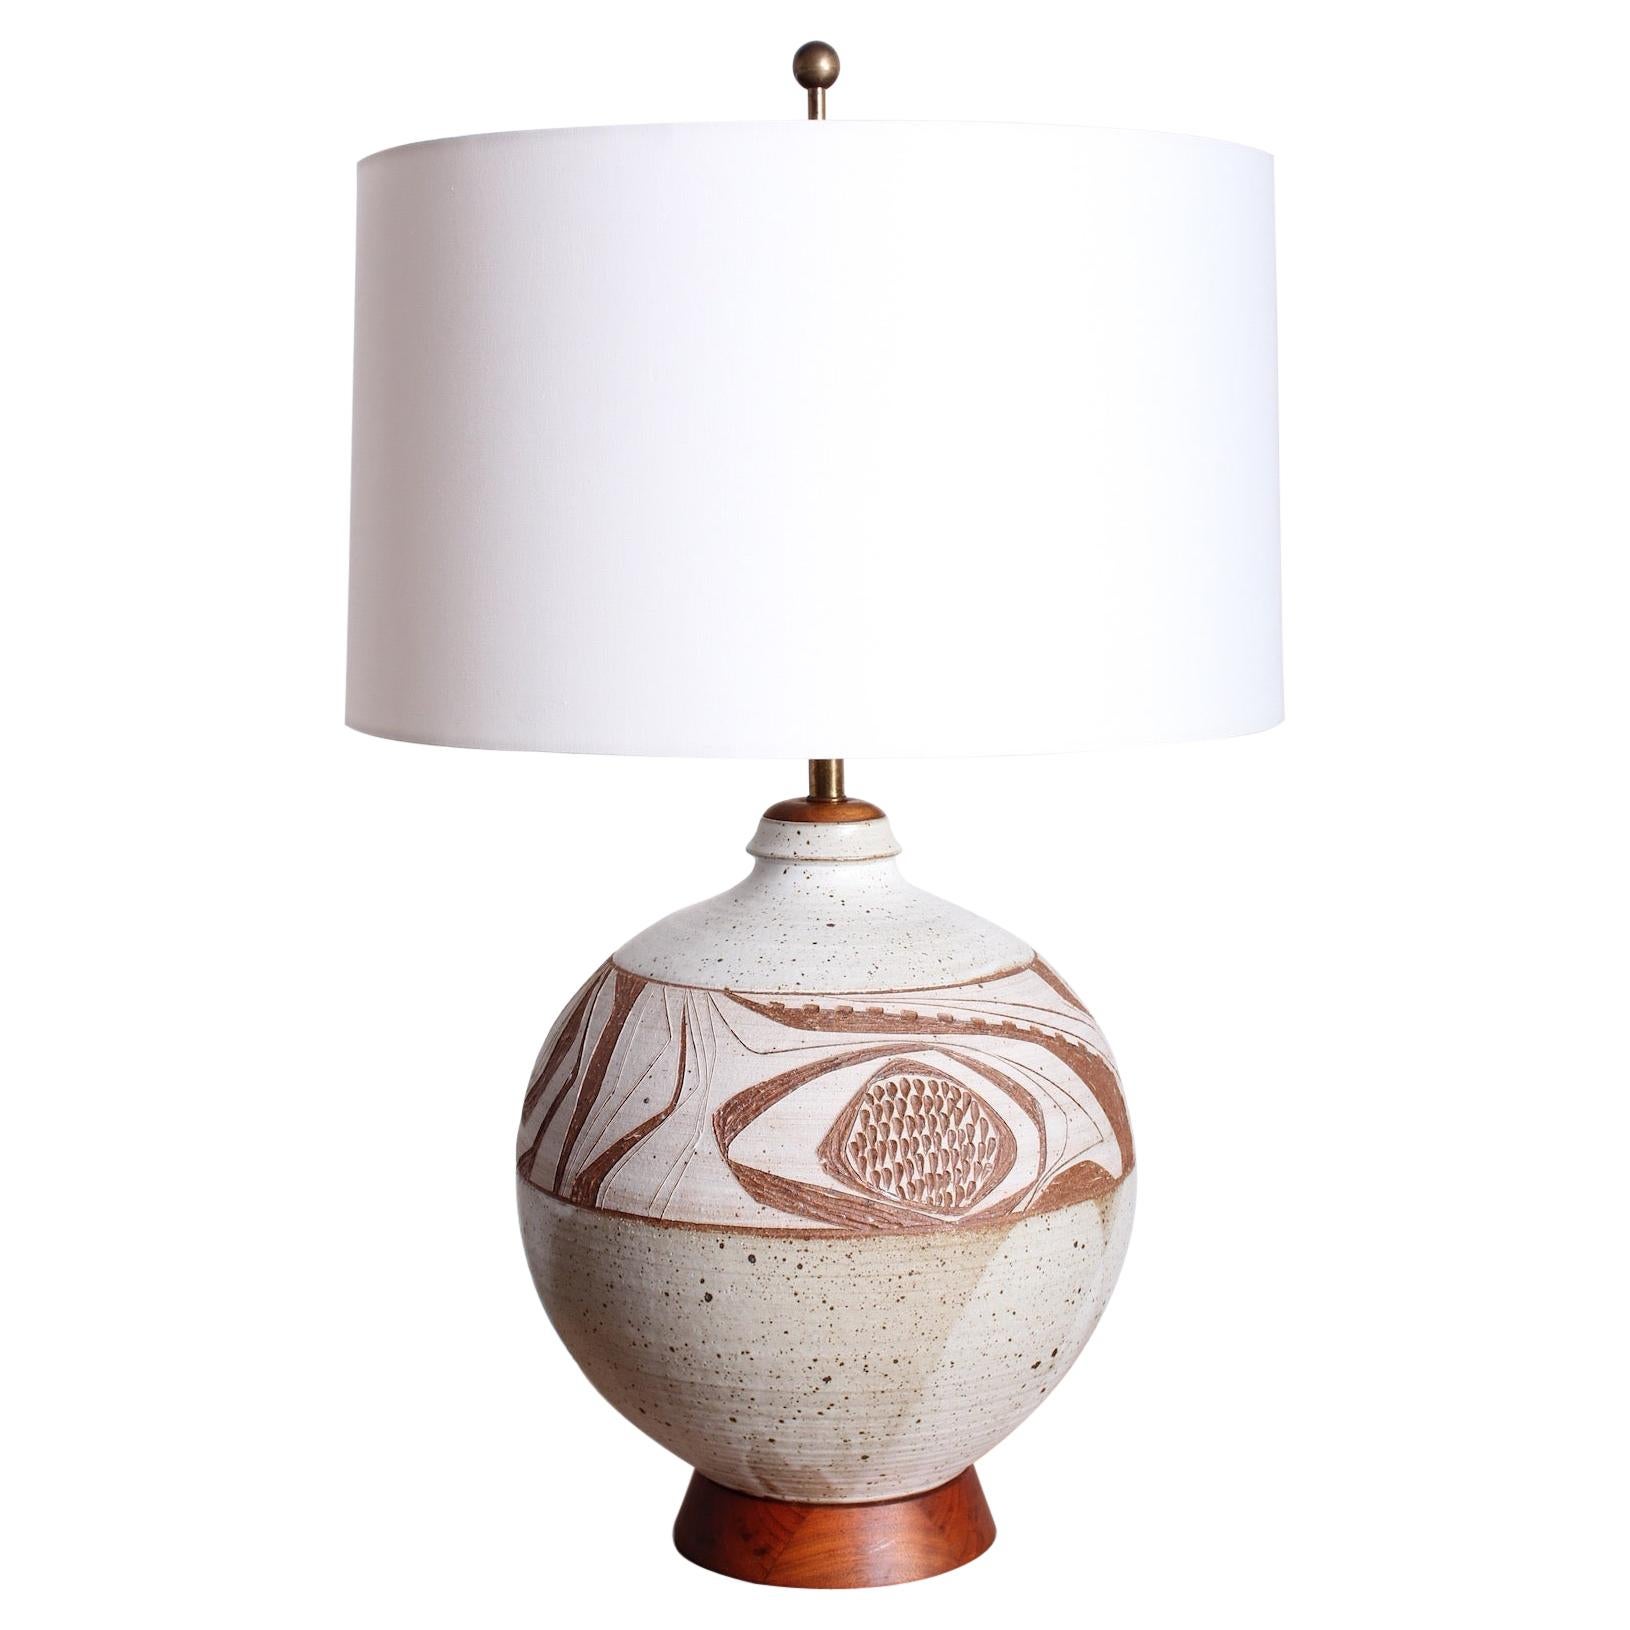 Joel Edwards Studio Ceramic Lamp For Sale